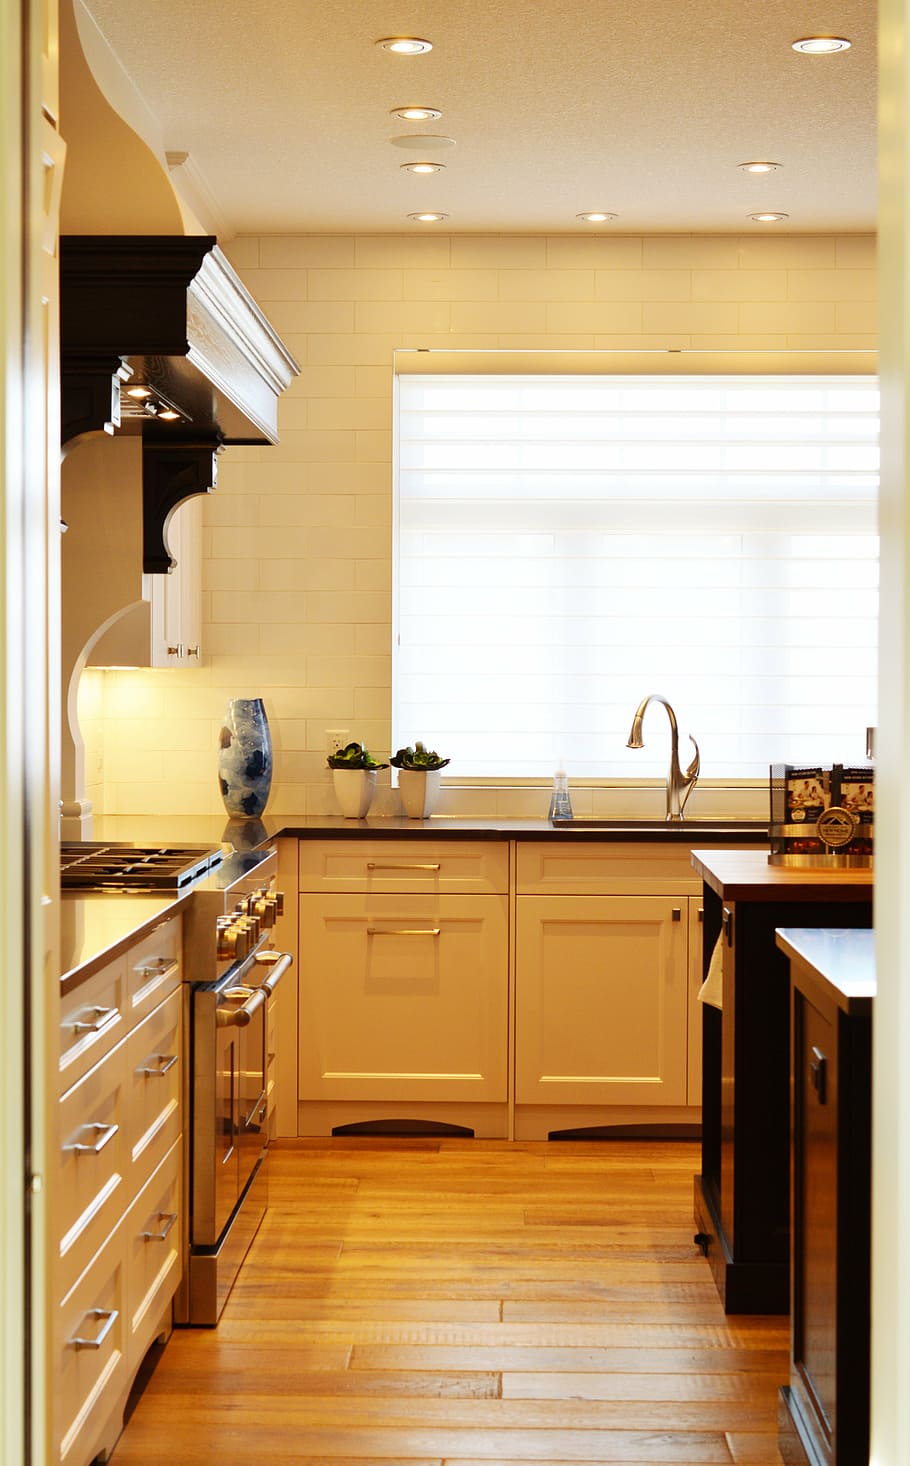 branco, de madeira, armário de cozinha, atrás, pintado, parede, cozinha, contador, fogão, forno